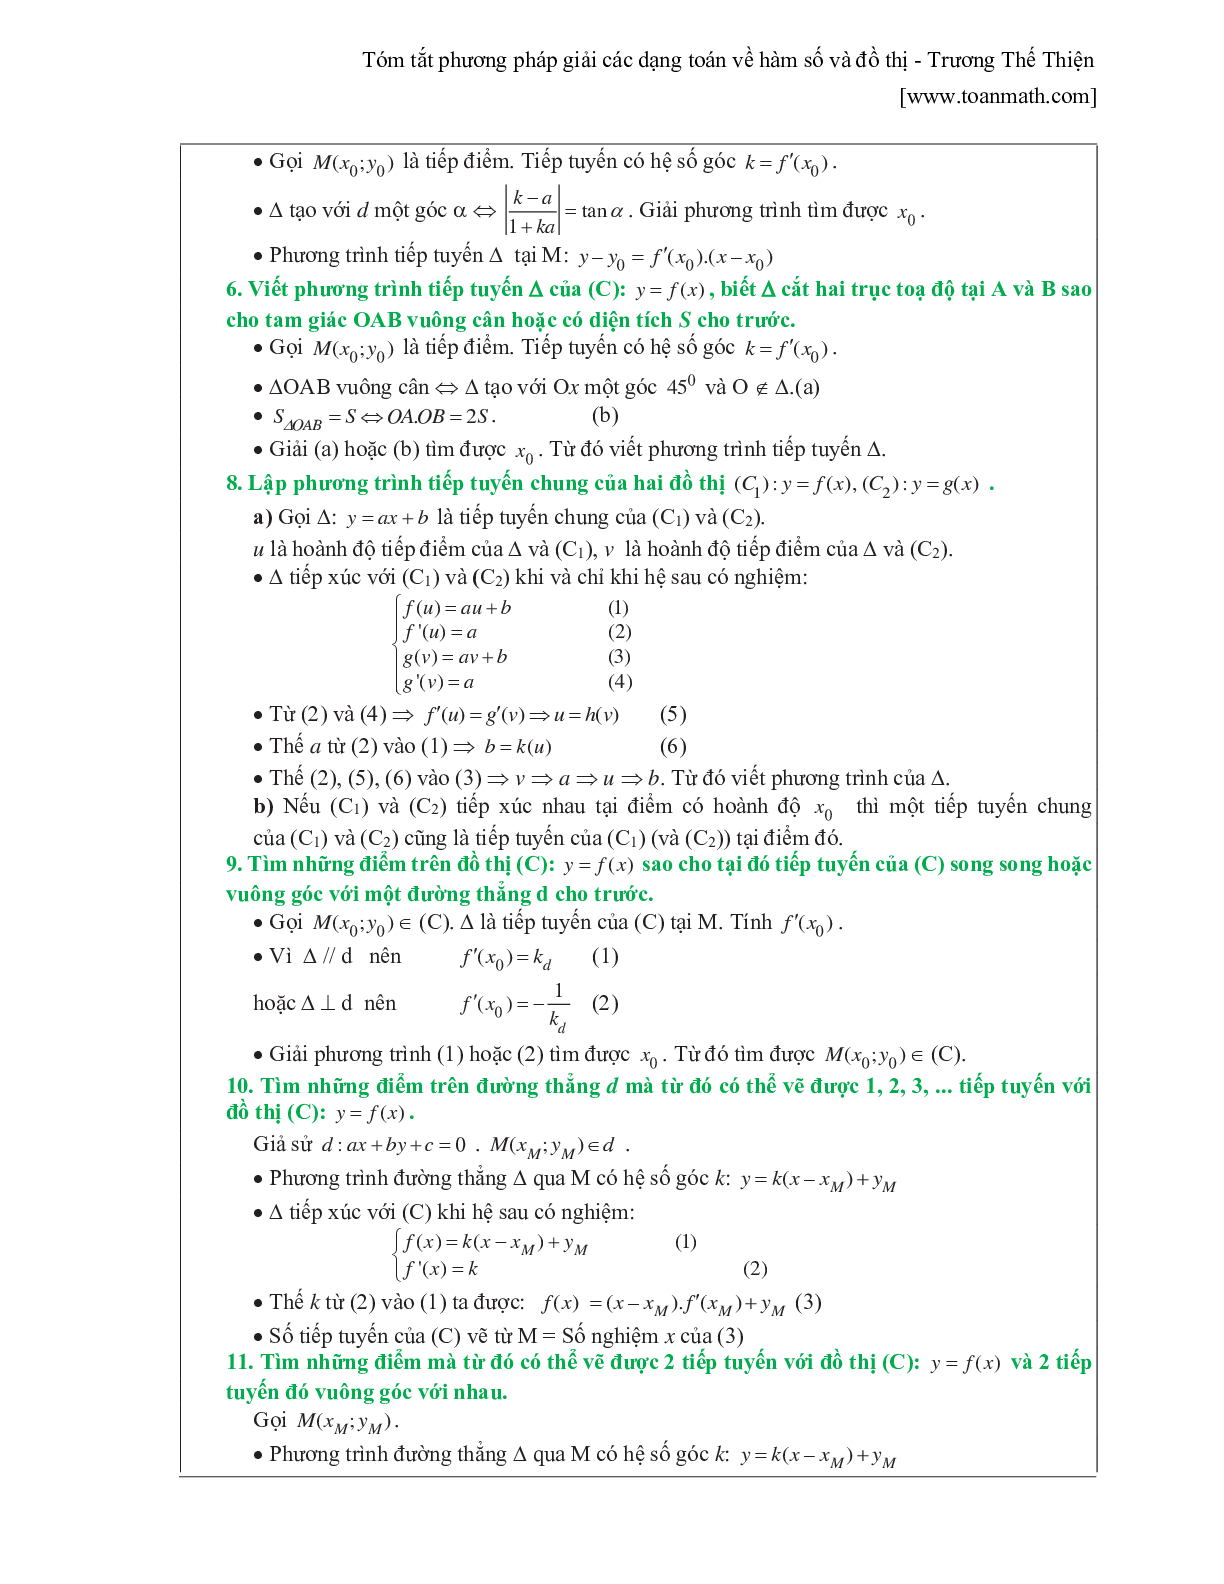 Tóm tắt phương pháp giải các dạng toán về hàm số và đồ thị (trang 9)